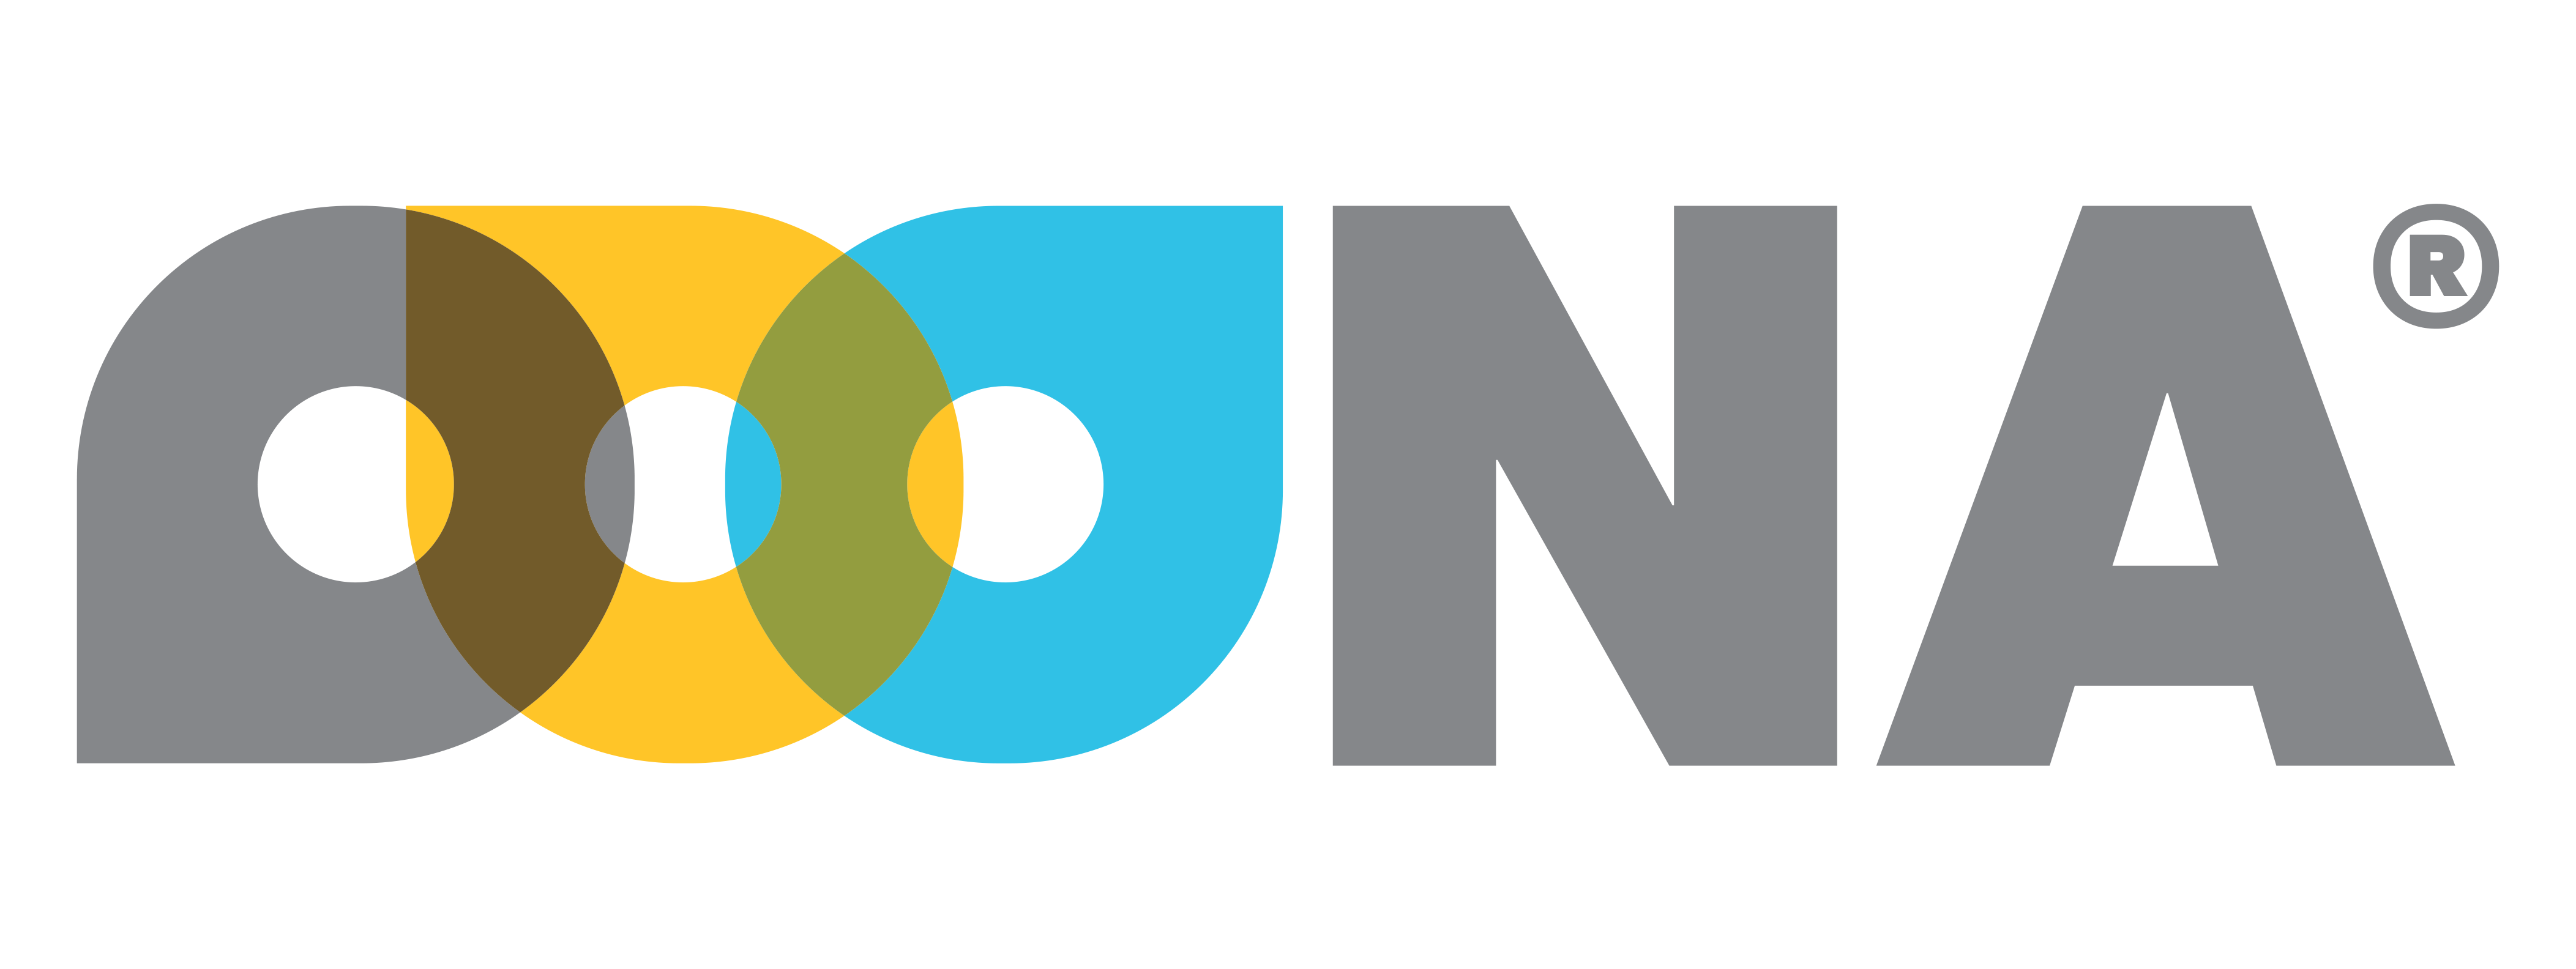 OOONA Logo